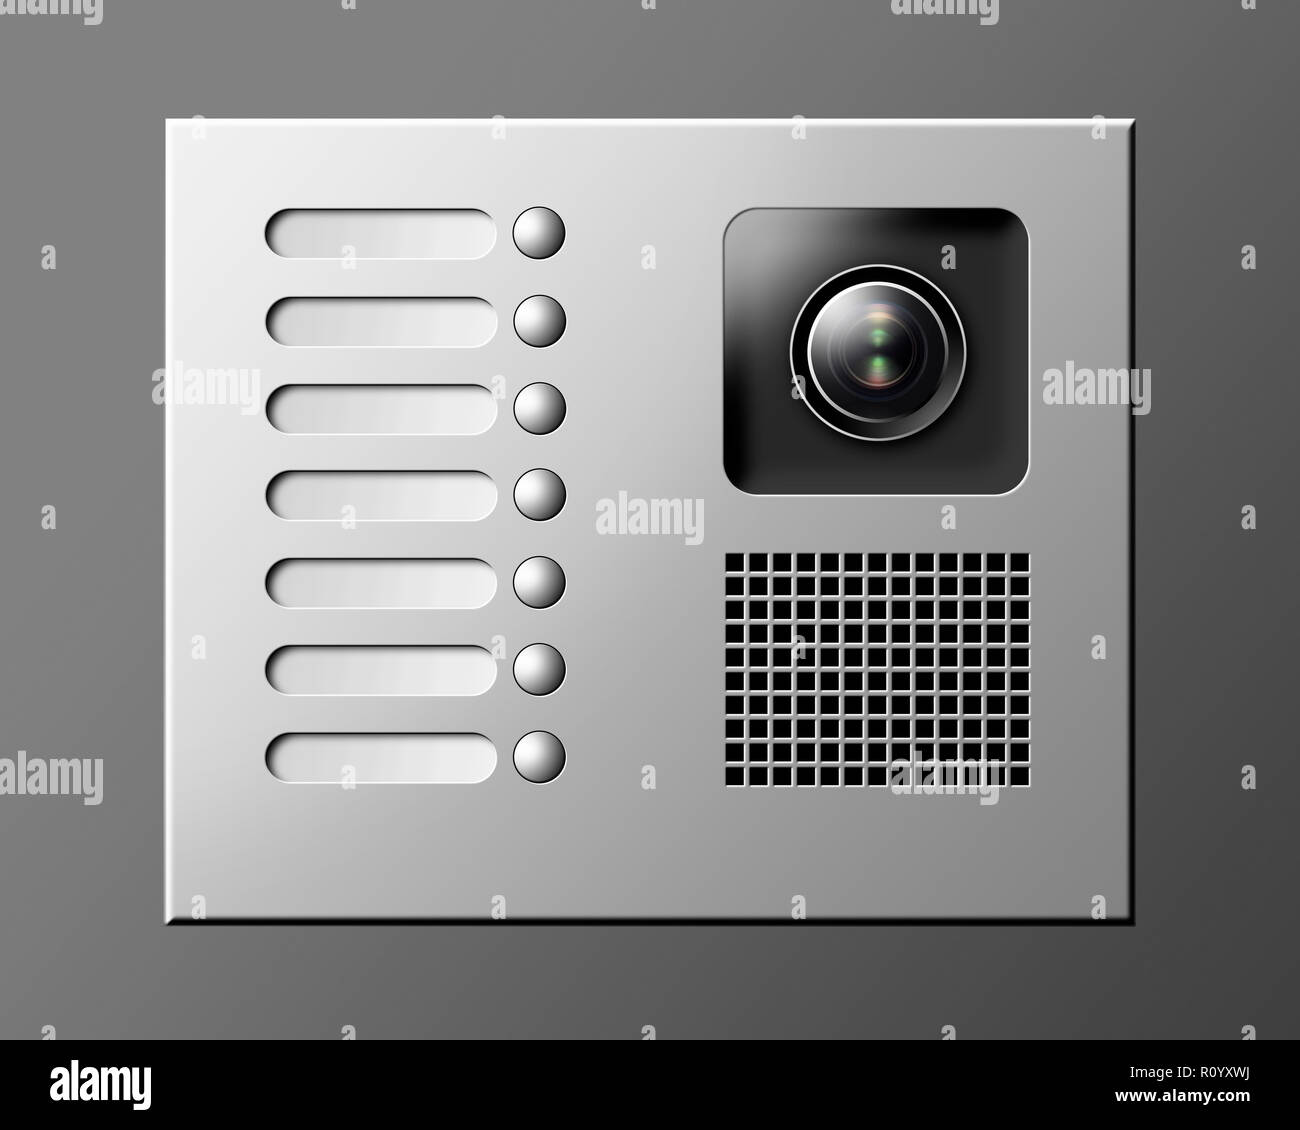 Interphone Banque de photographies et d'images à haute résolution - Alamy